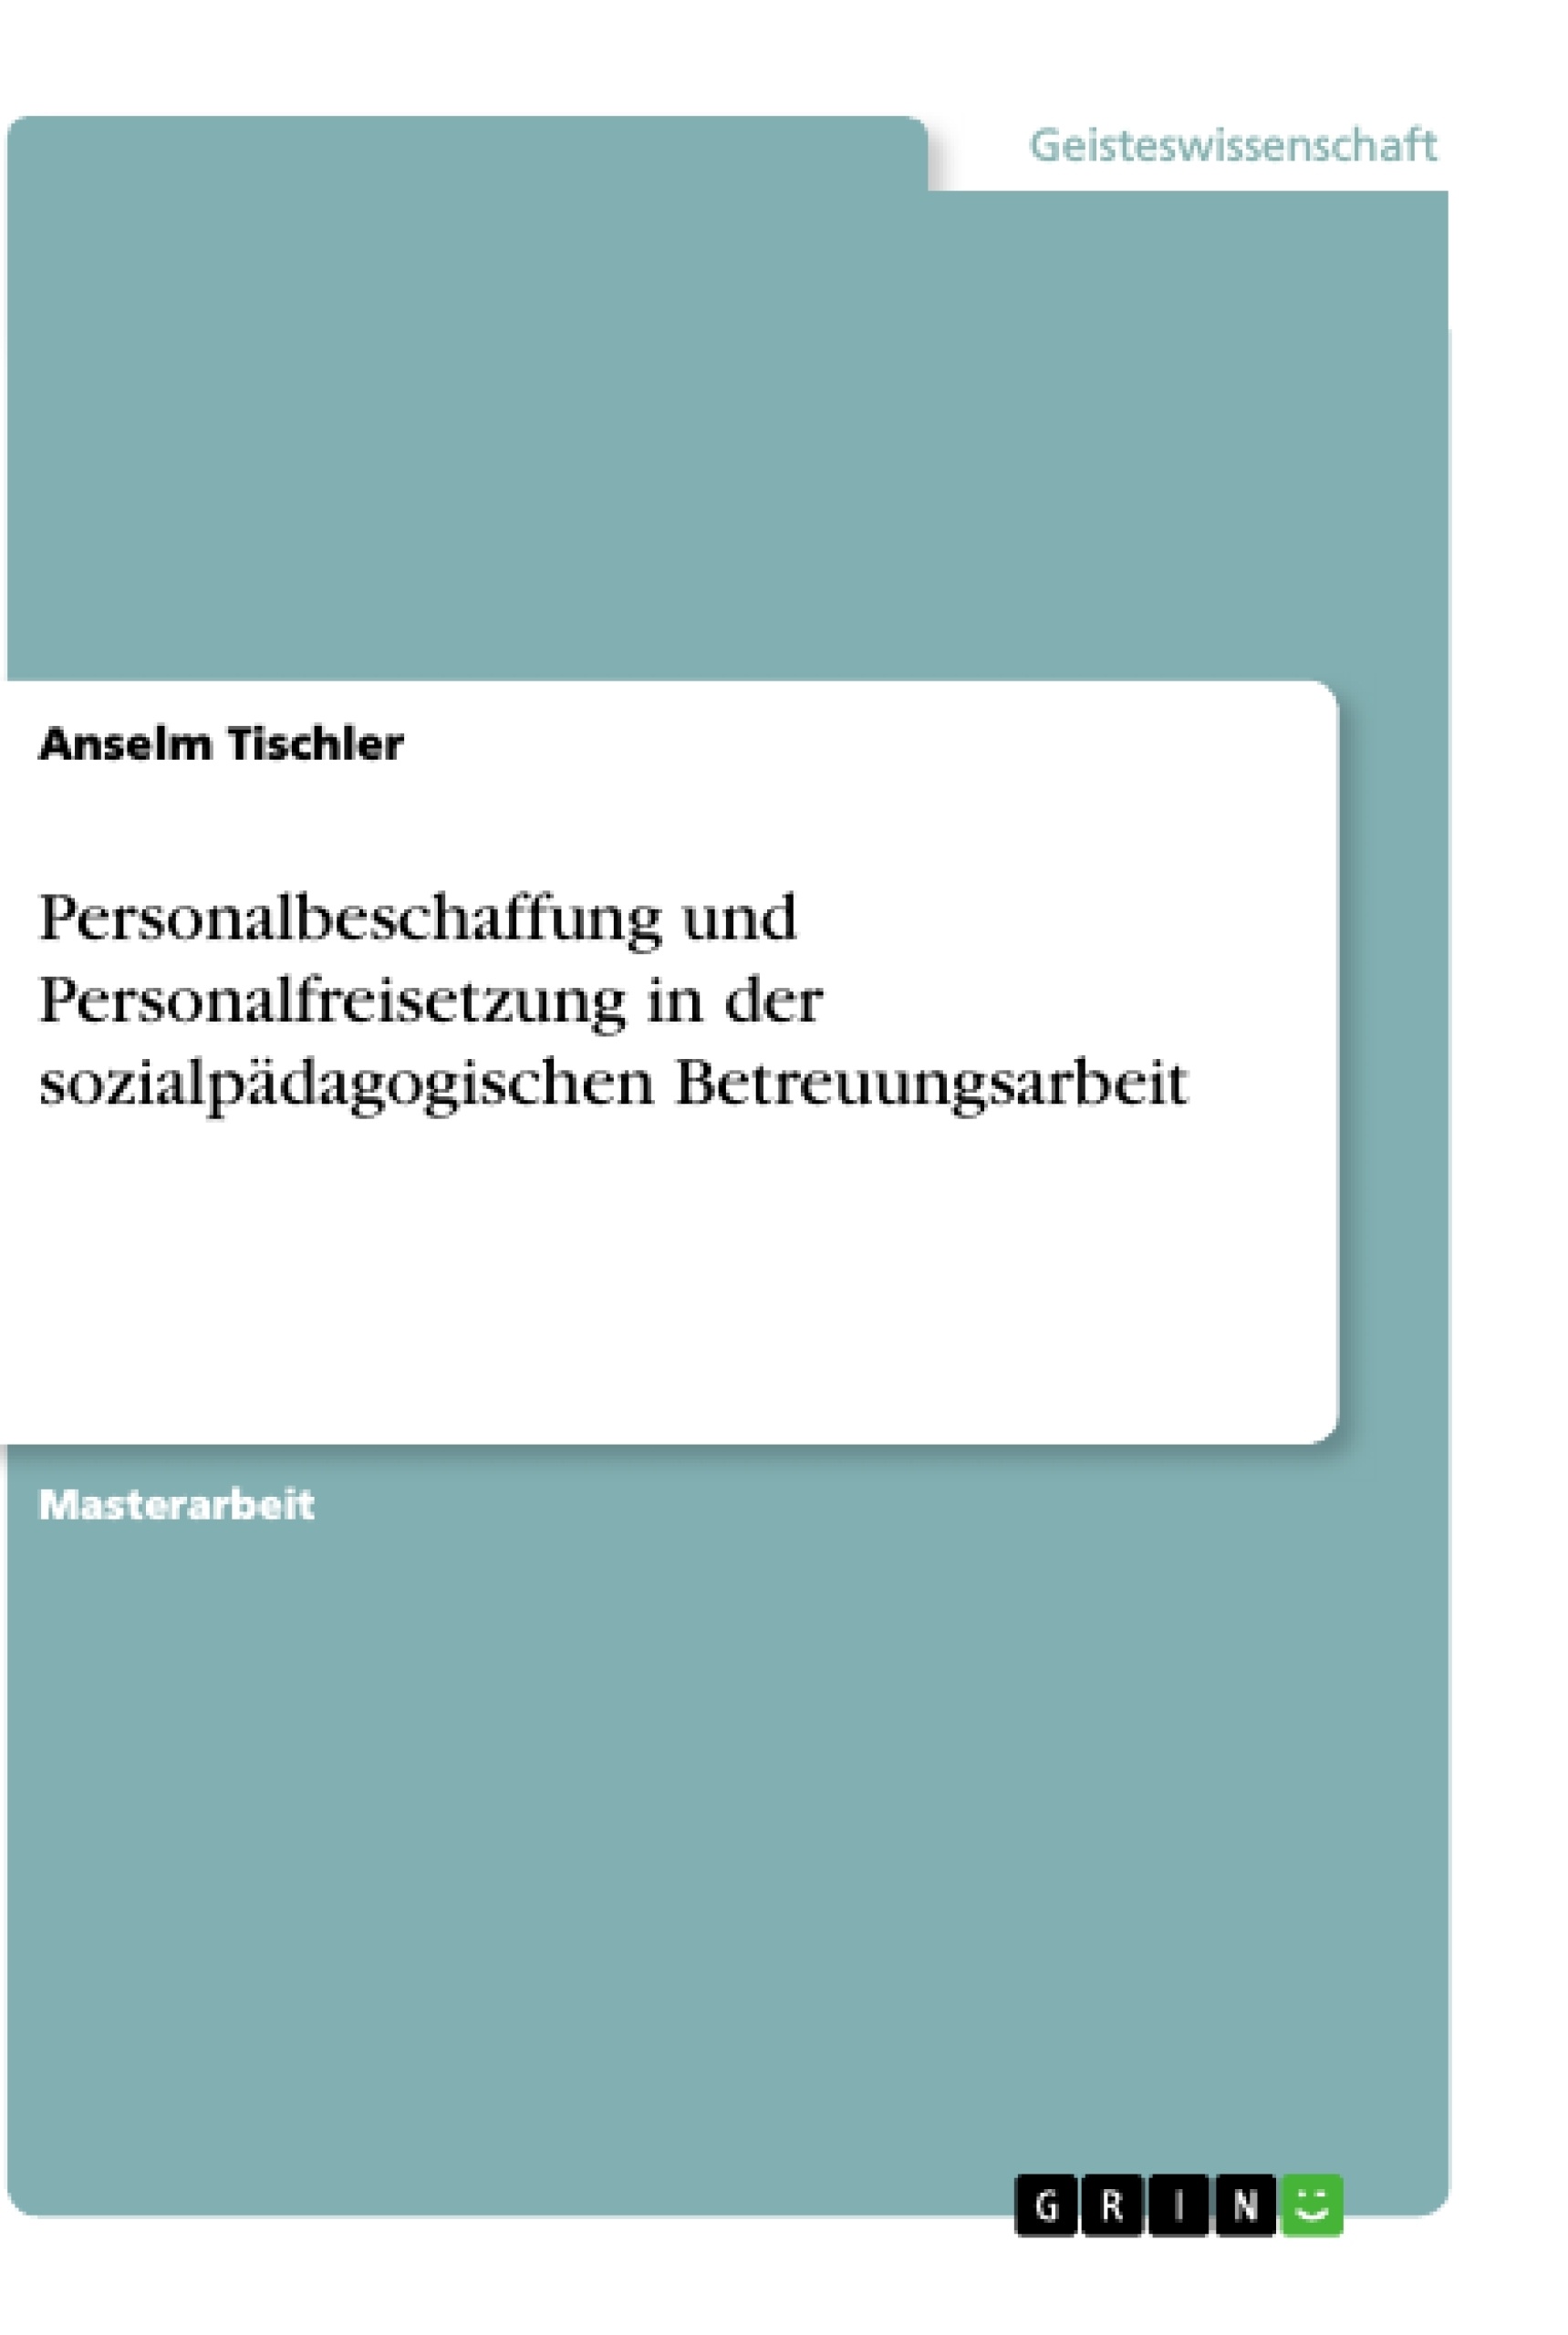 Title: Personalbeschaffung und Personalfreisetzung in der sozialpädagogischen Betreuungsarbeit